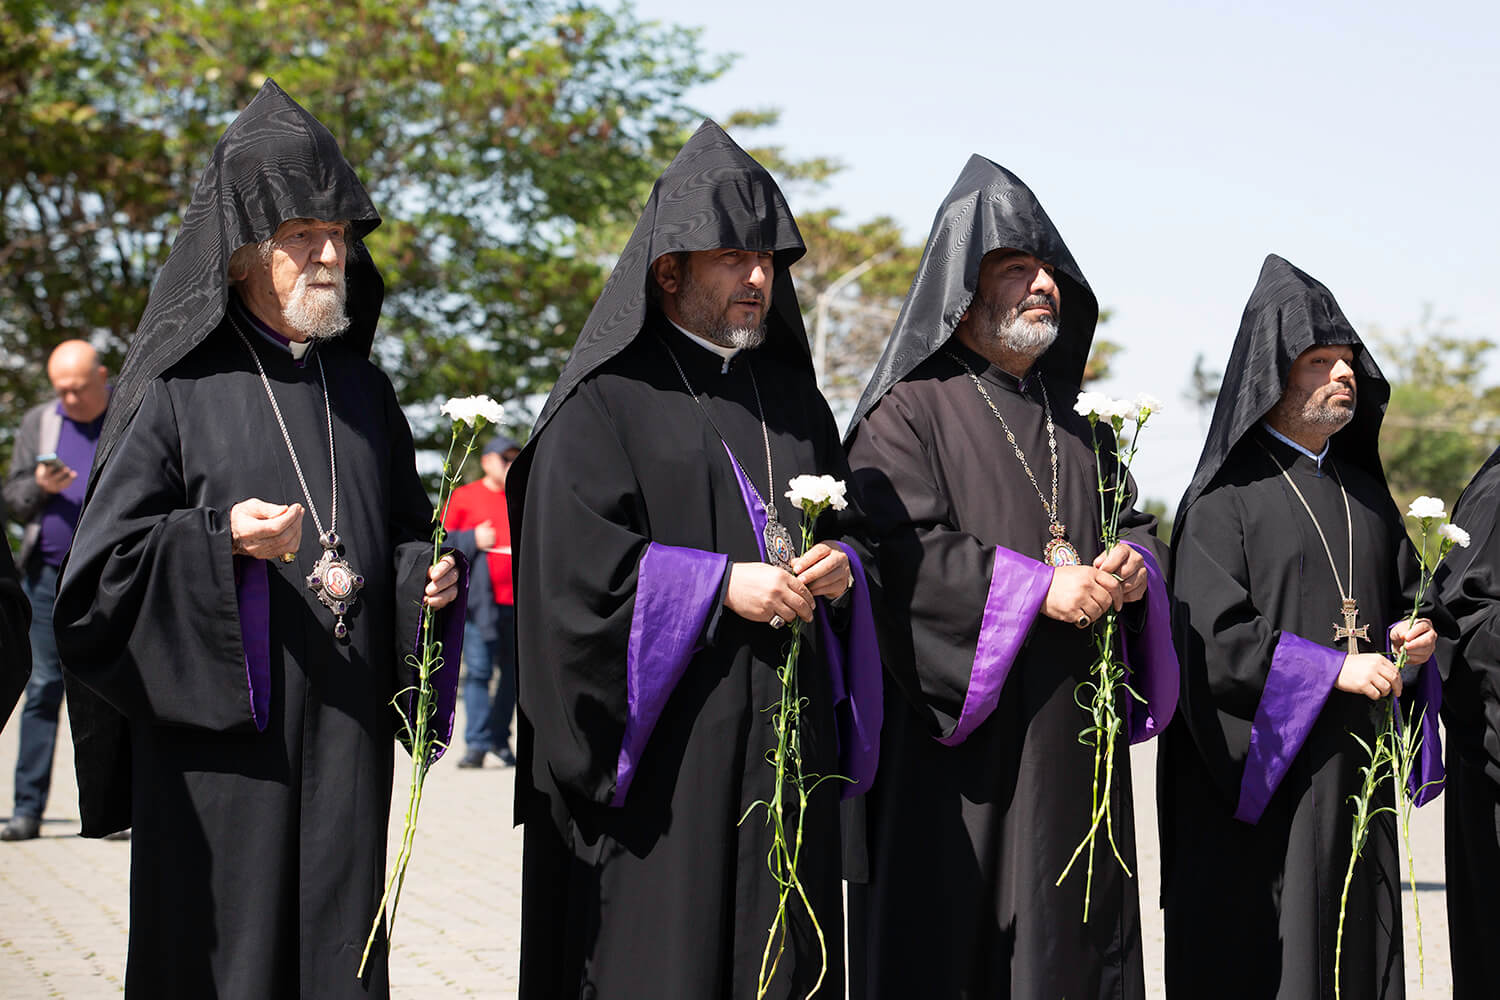 Մայր Աթոռի Սուրբ Էջմիածնի միաբաններն այցելեցին «Հաղթանակ» զբոսայգի